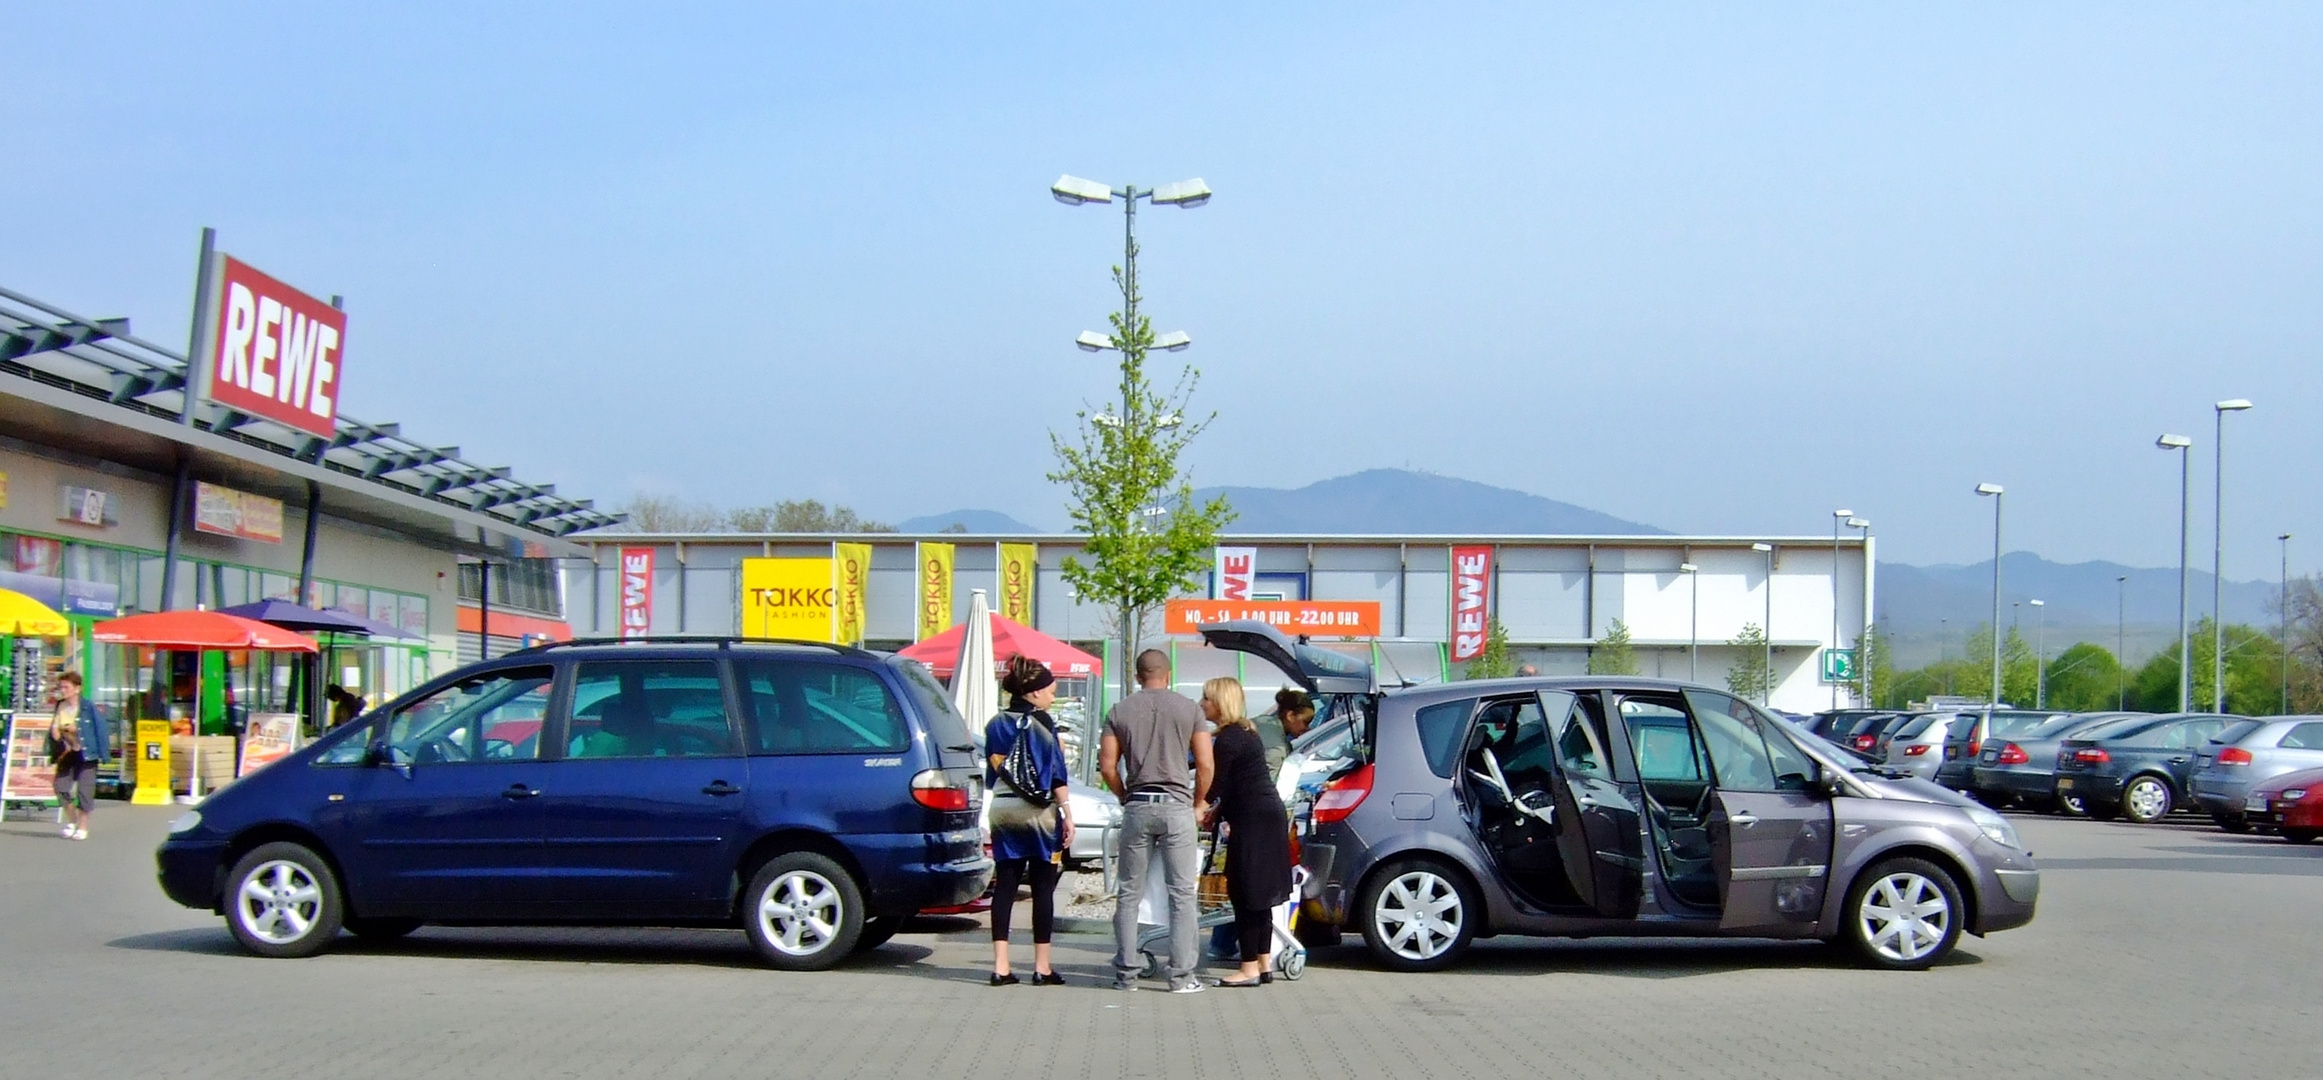 Parkplatz-Palaver auf französisch